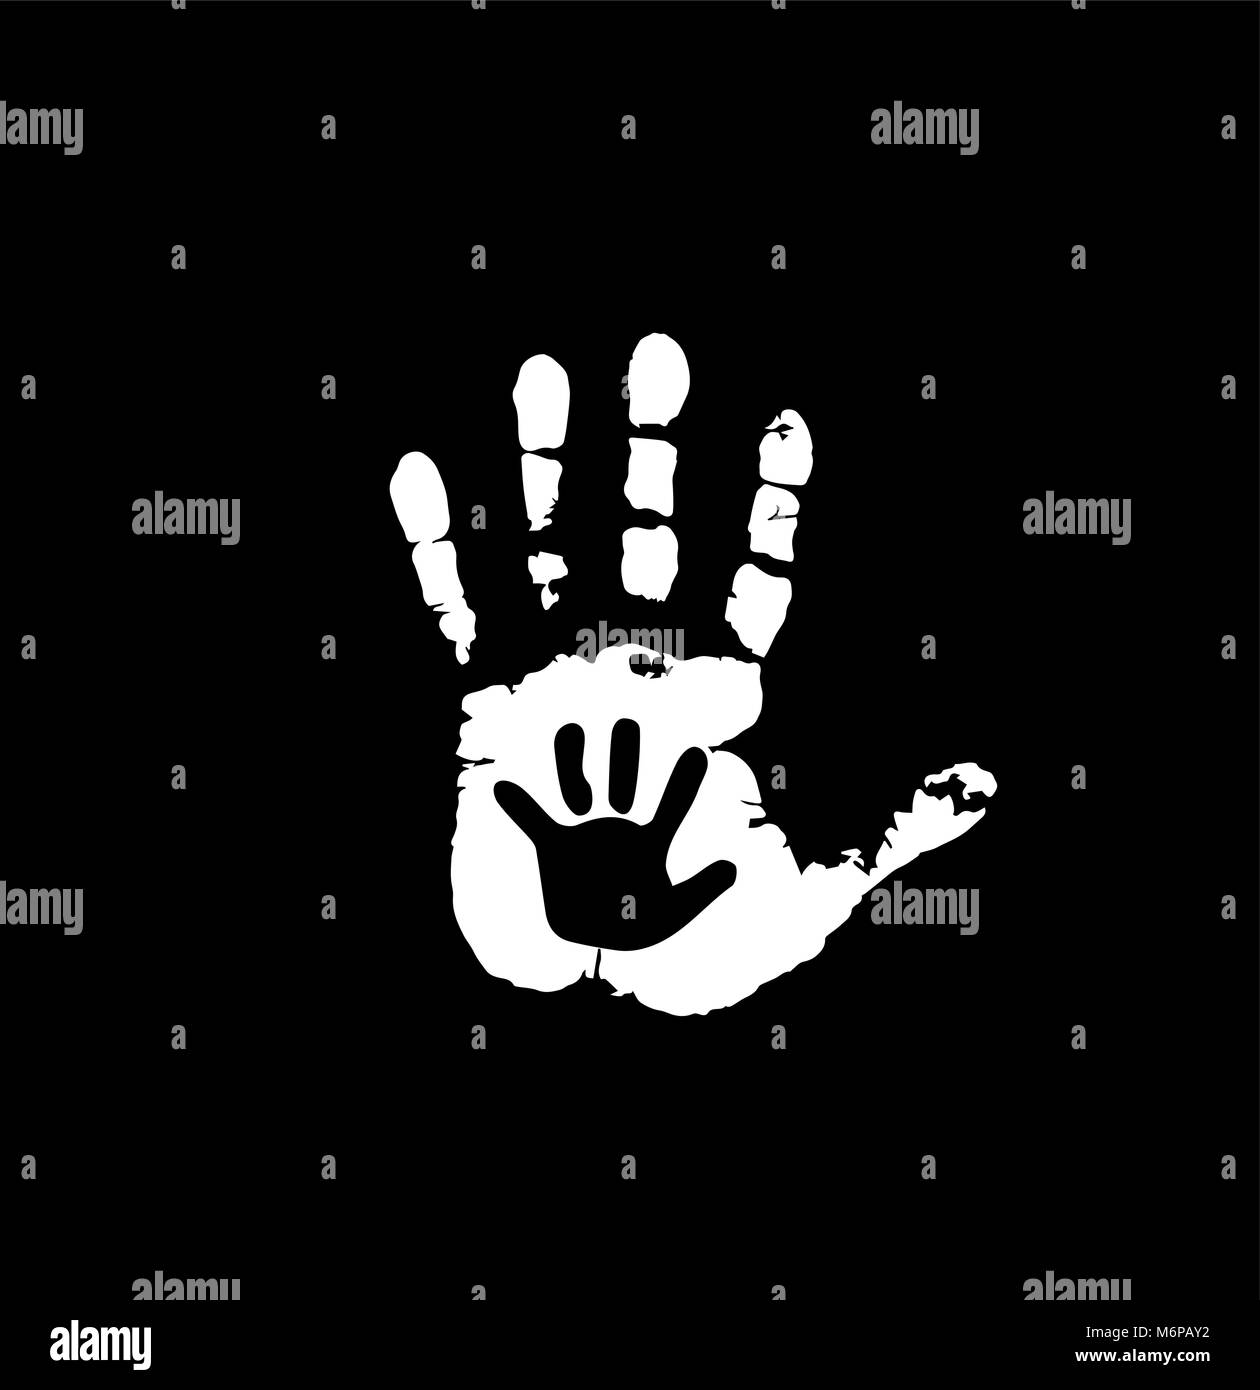 Le noir et blanc silhouette de main de bébé et adultes dans la région de coeur. Mère ou père et enfant handprint. Paume de femme et bébé. Illustration vecteur social Illustration de Vecteur